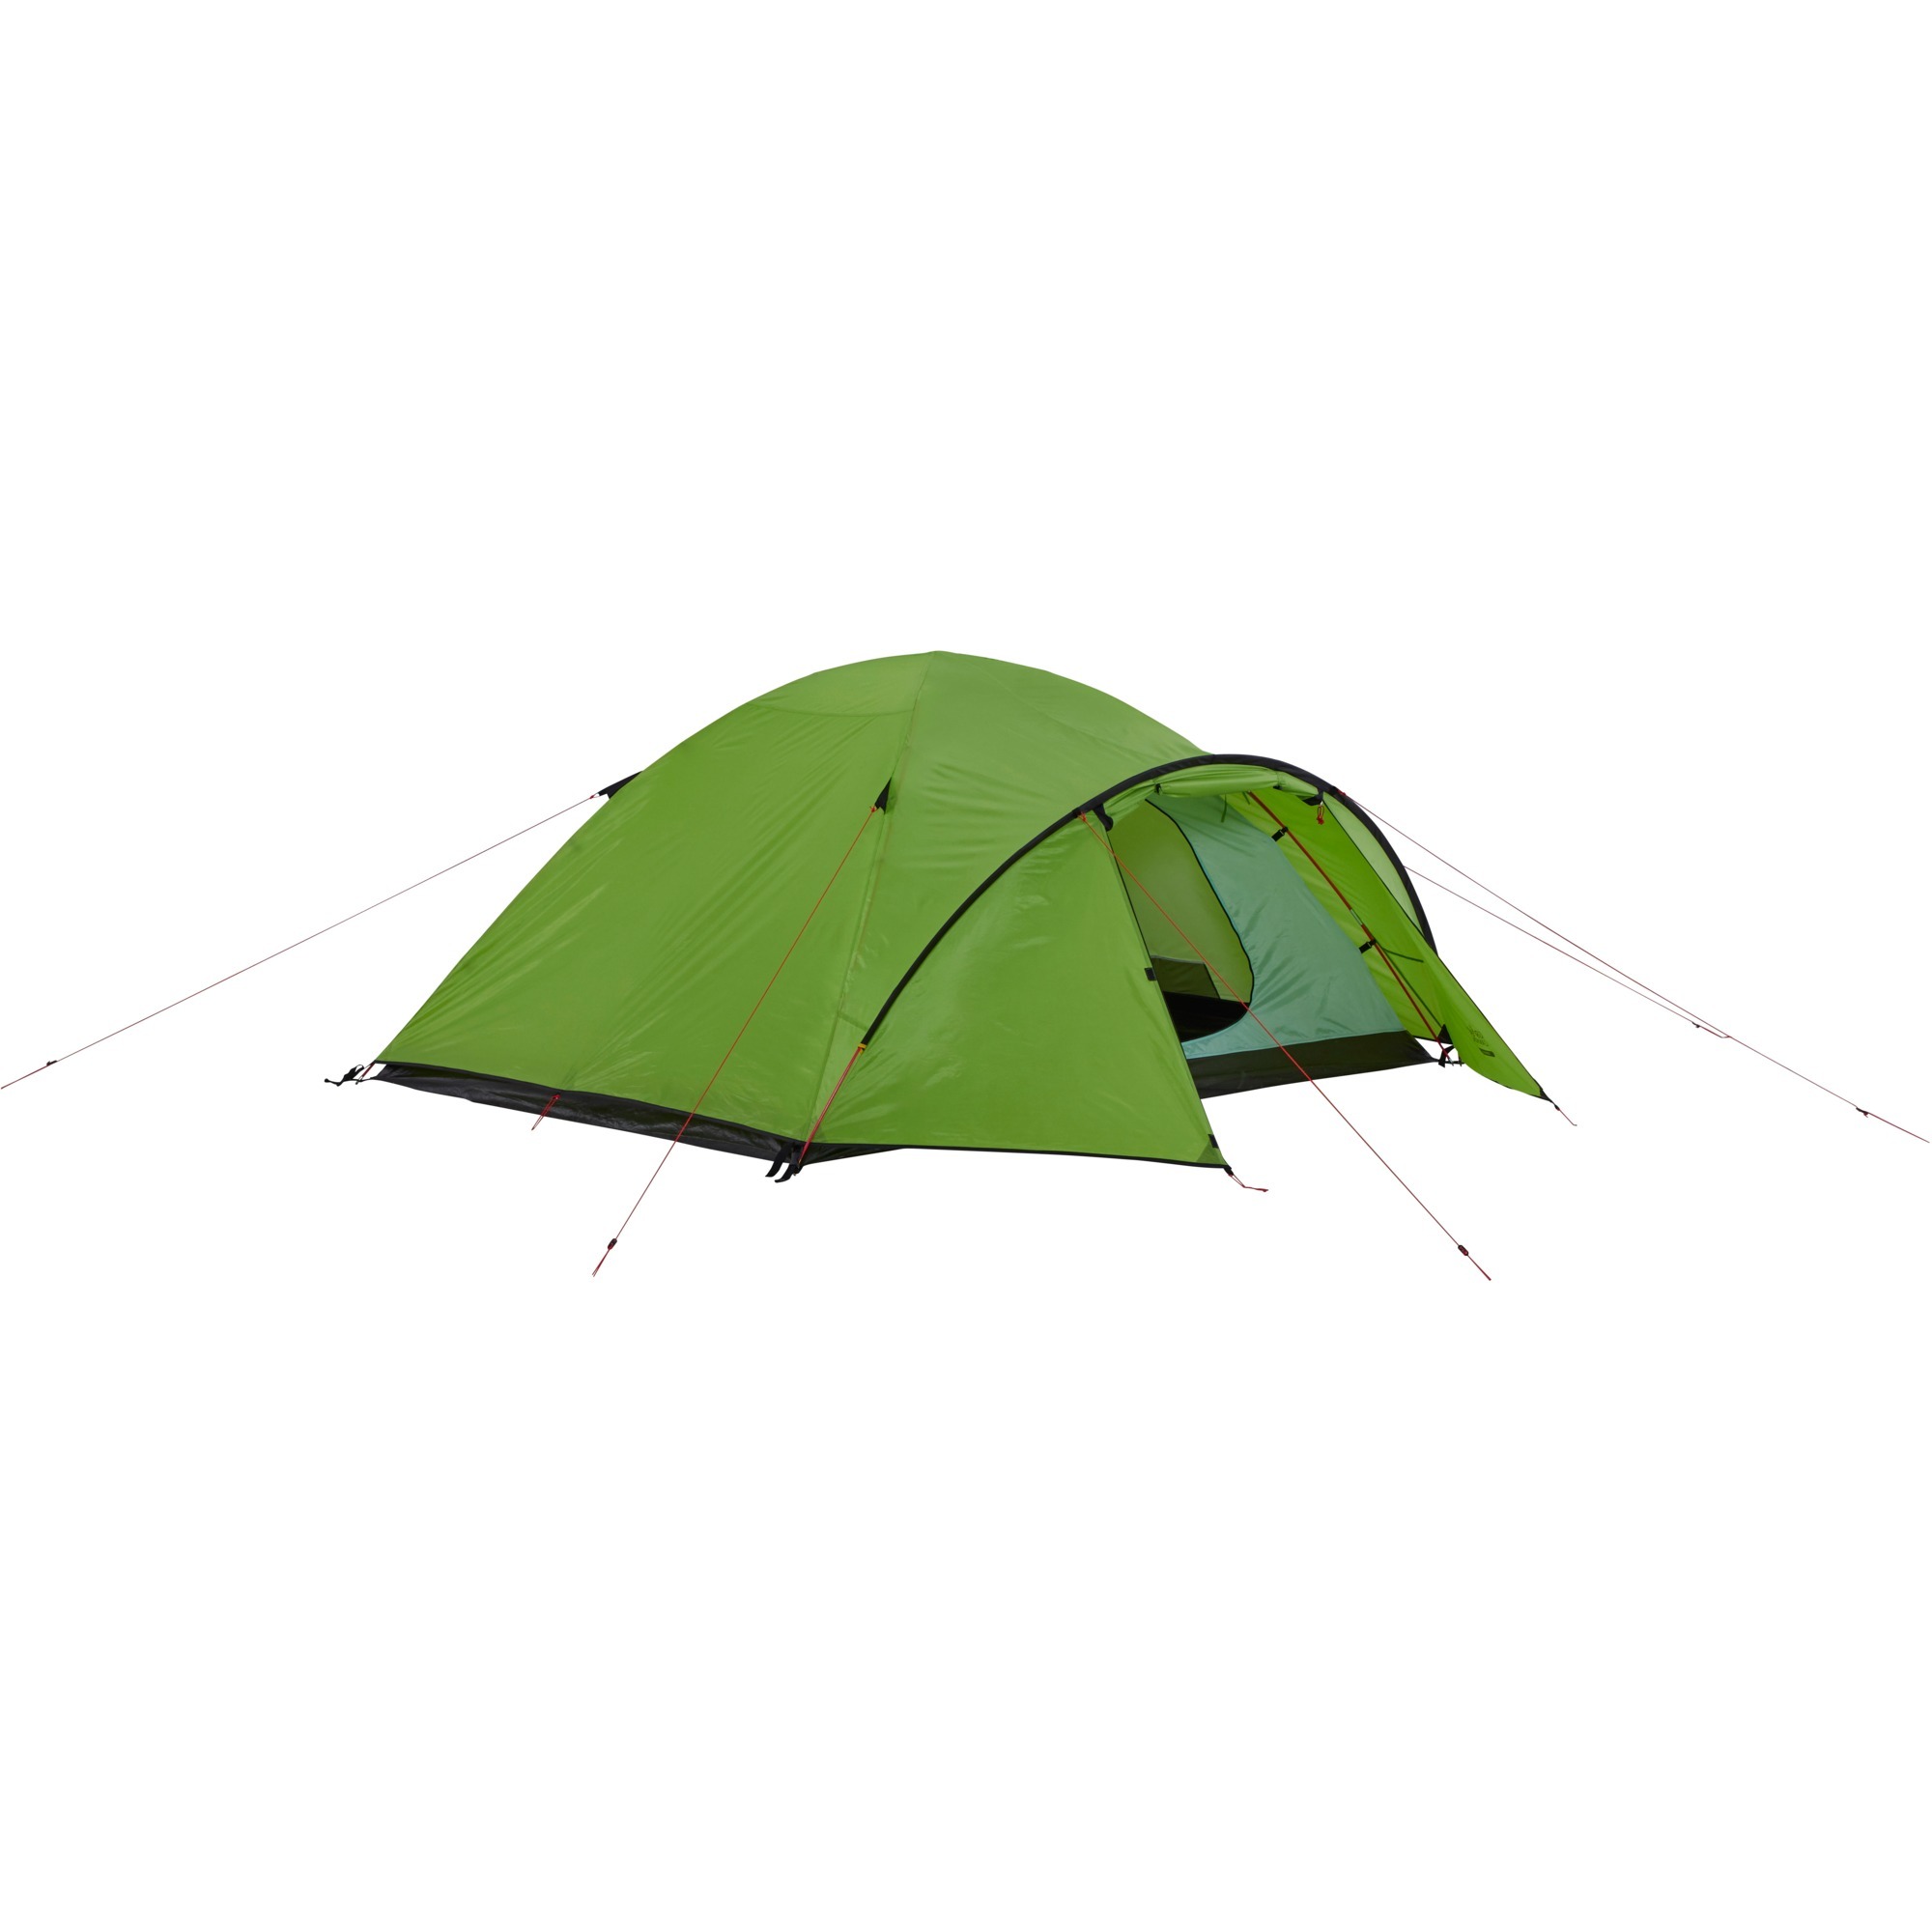 602013, Tent